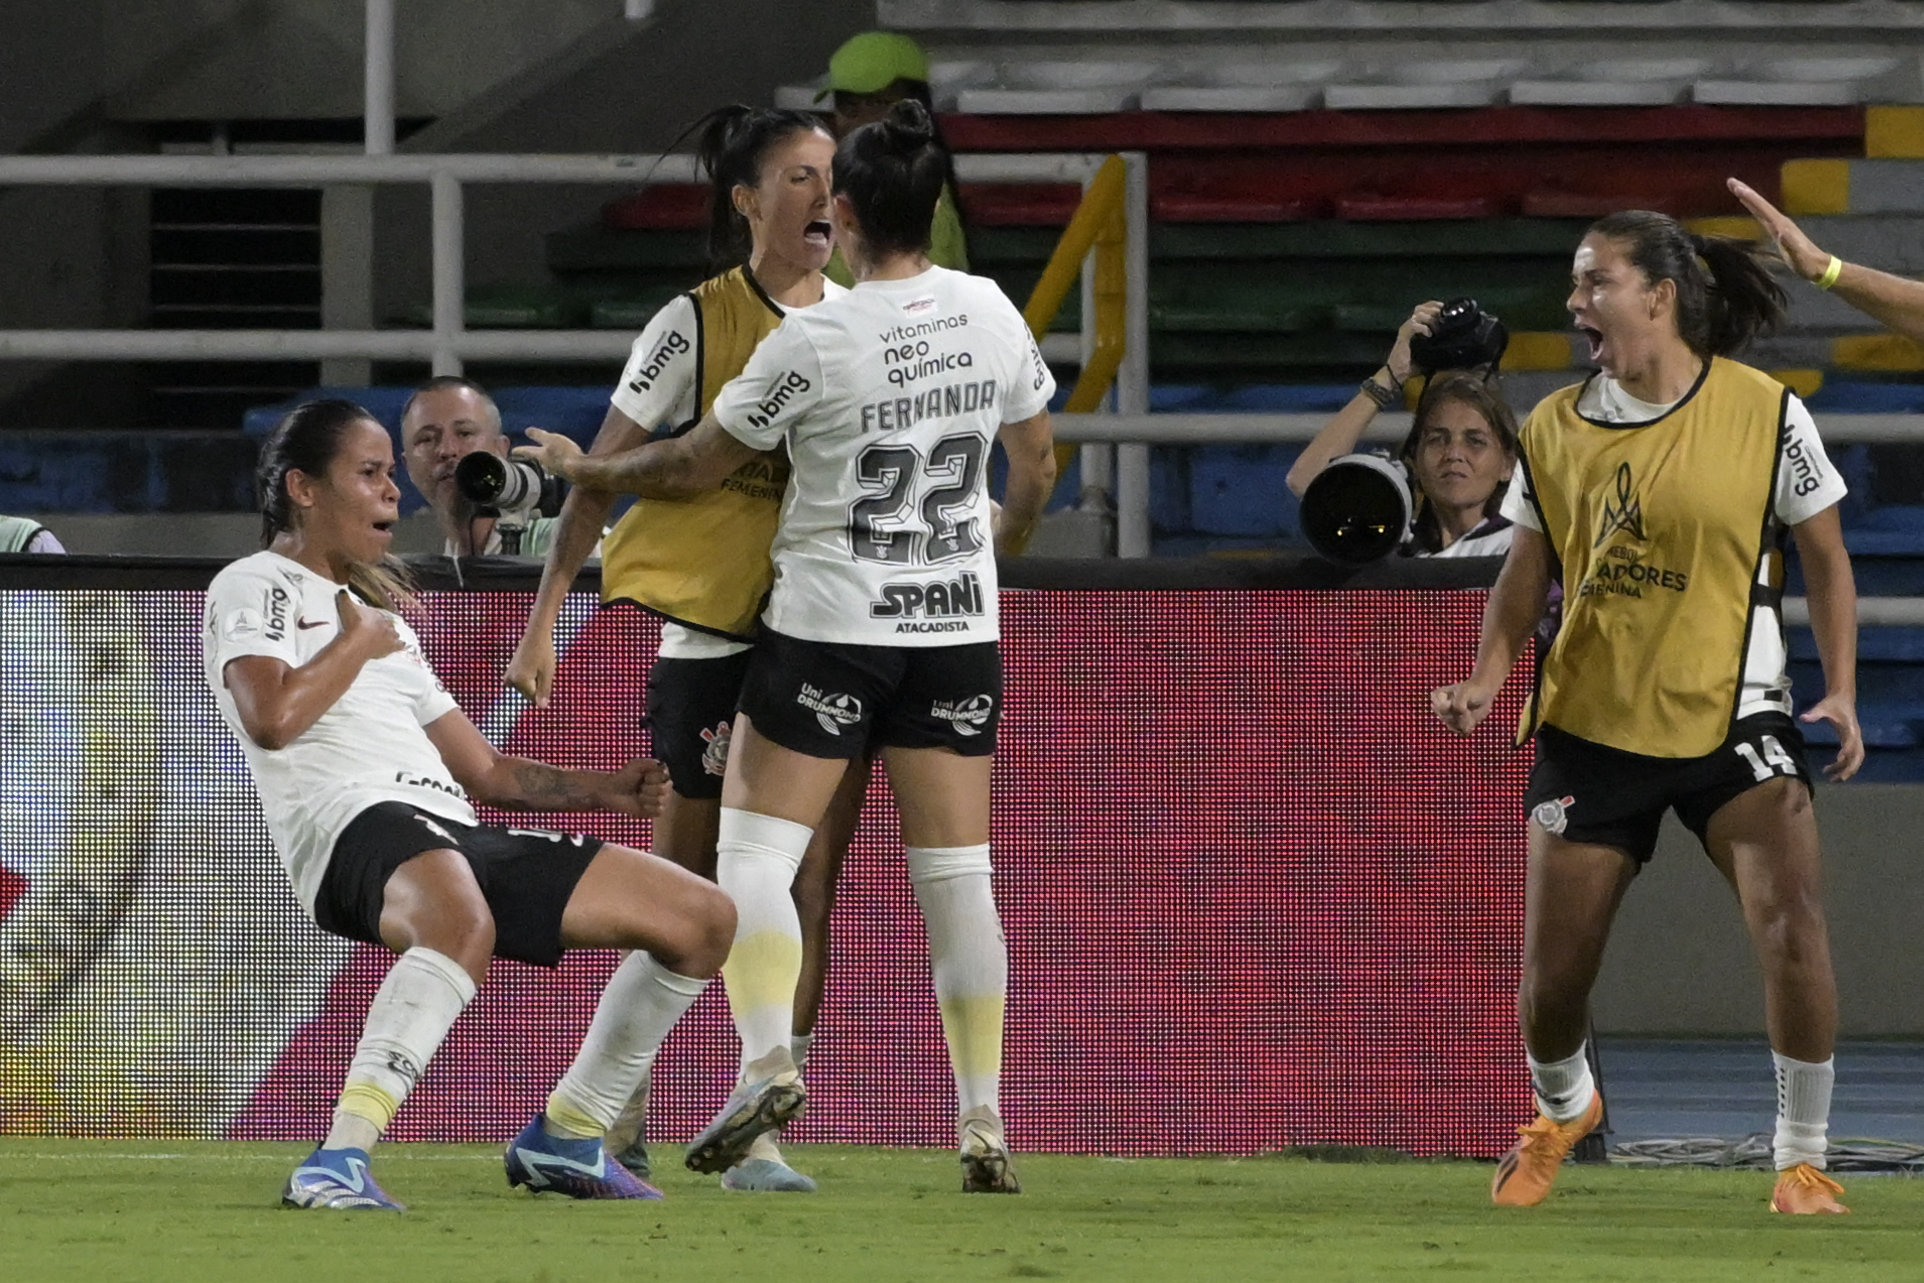 Corinthians bate o Inter nos pênaltis e vai à final da Libertadores Feminina (Photo by JOAQUIN SARMIENTO / AFP) (Photo by JOAQUIN SARMIENTO/AFP via Getty Images)